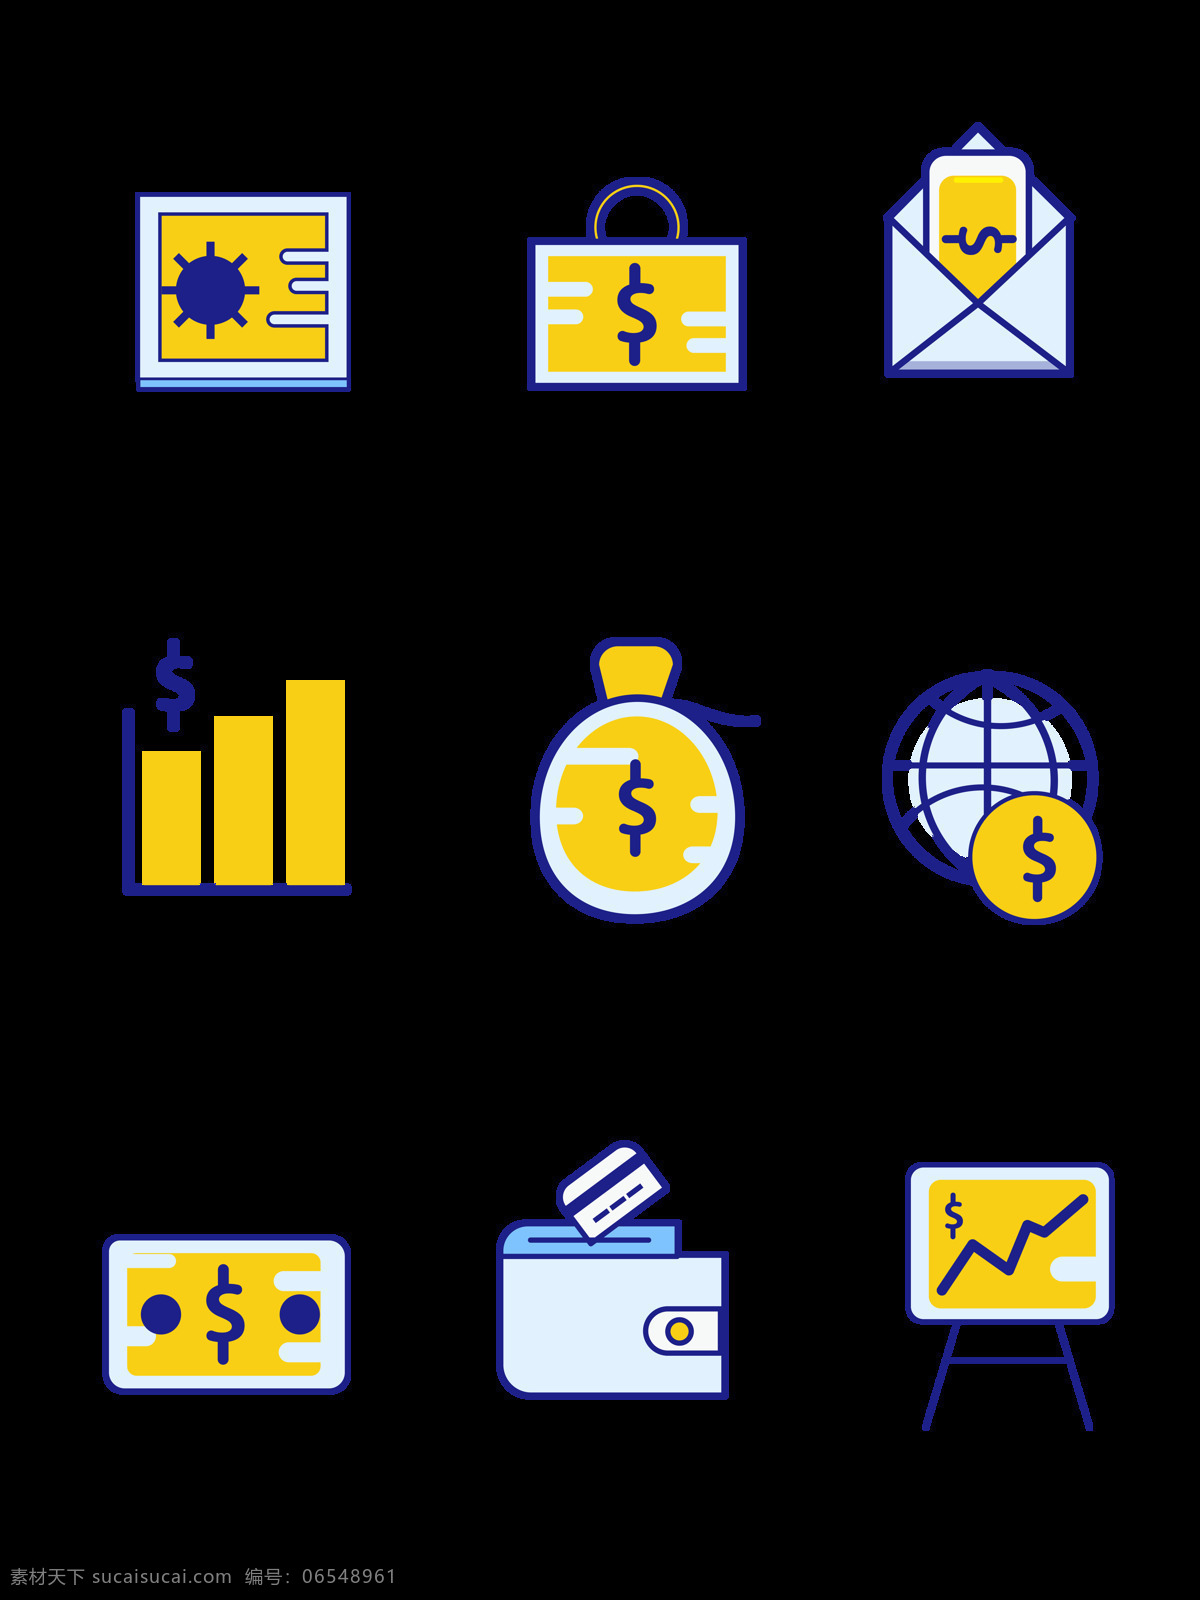 手机 图标 金融 金币 商业 iocn 理财 钱 mbe 风格 元素 手机图标 ui app